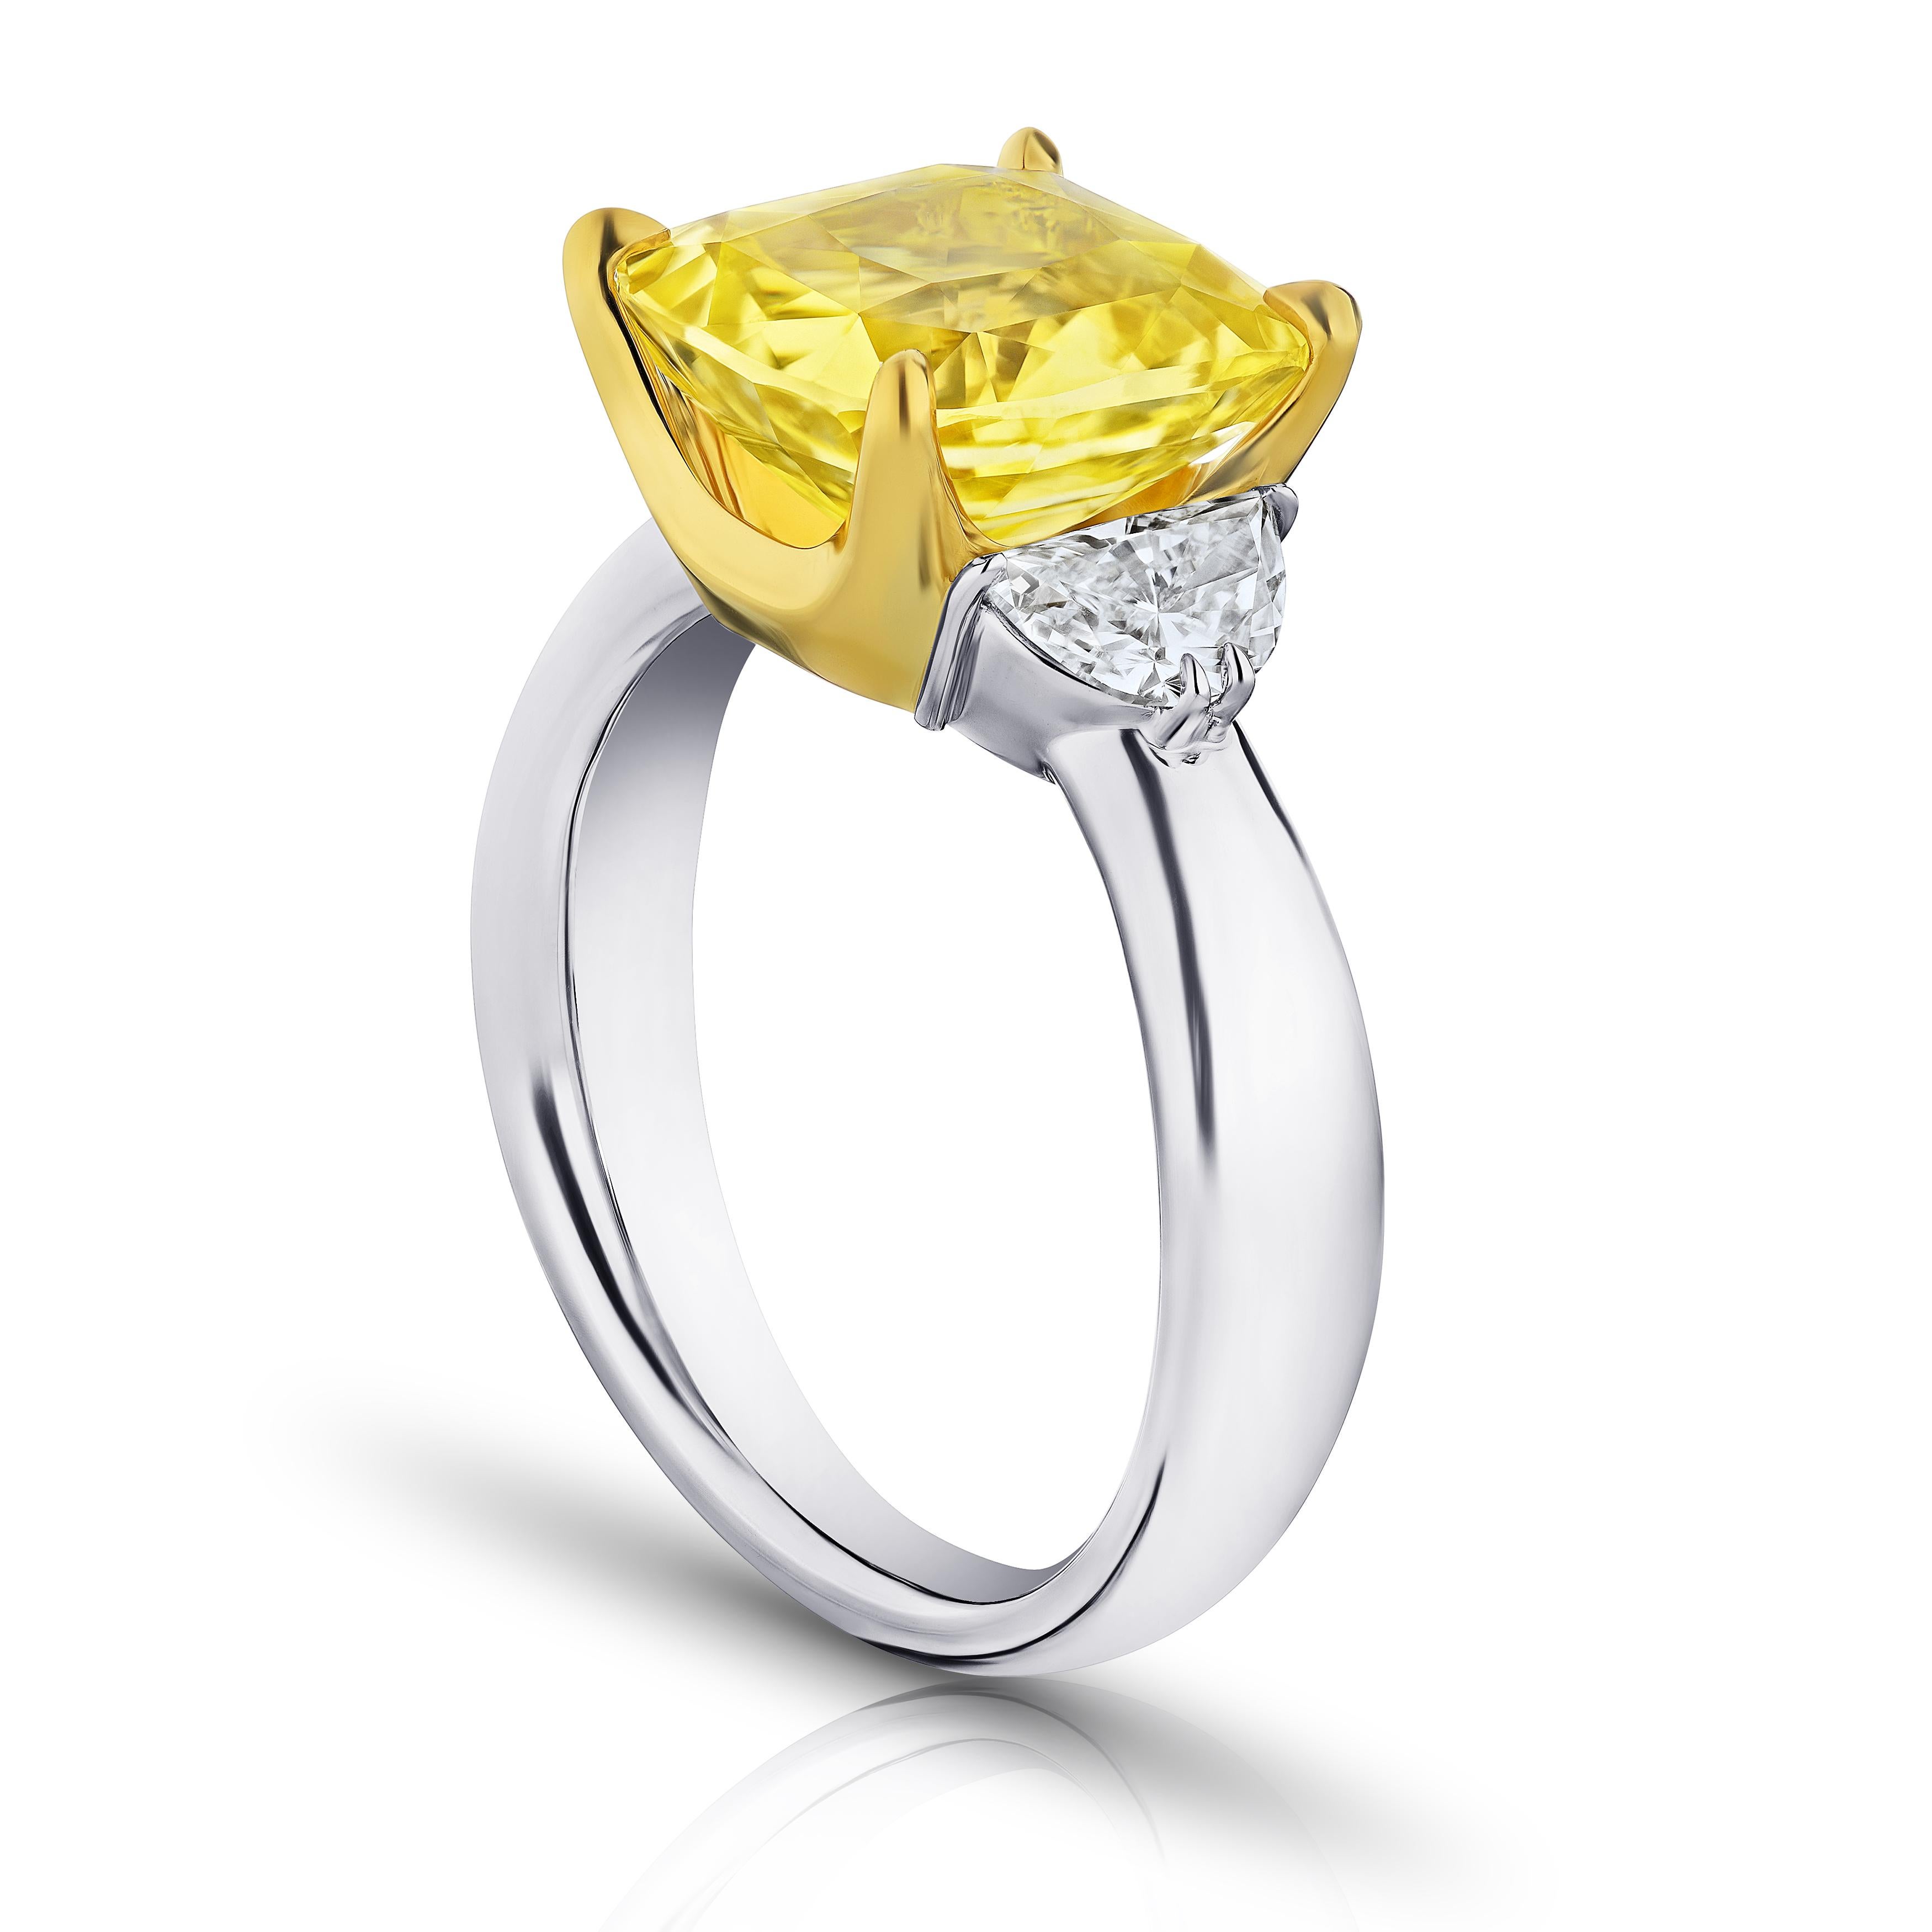 6.51 Karat Kissen gelben Saphir mit Halbmond Diamanten .80 Karat in einem Platin mit 18k Gelbgold Ring gesetzt. Der Ring hat derzeit die Größe 7. Resizing auf Ihre Fingergröße ist im Preis inbegriffen.
